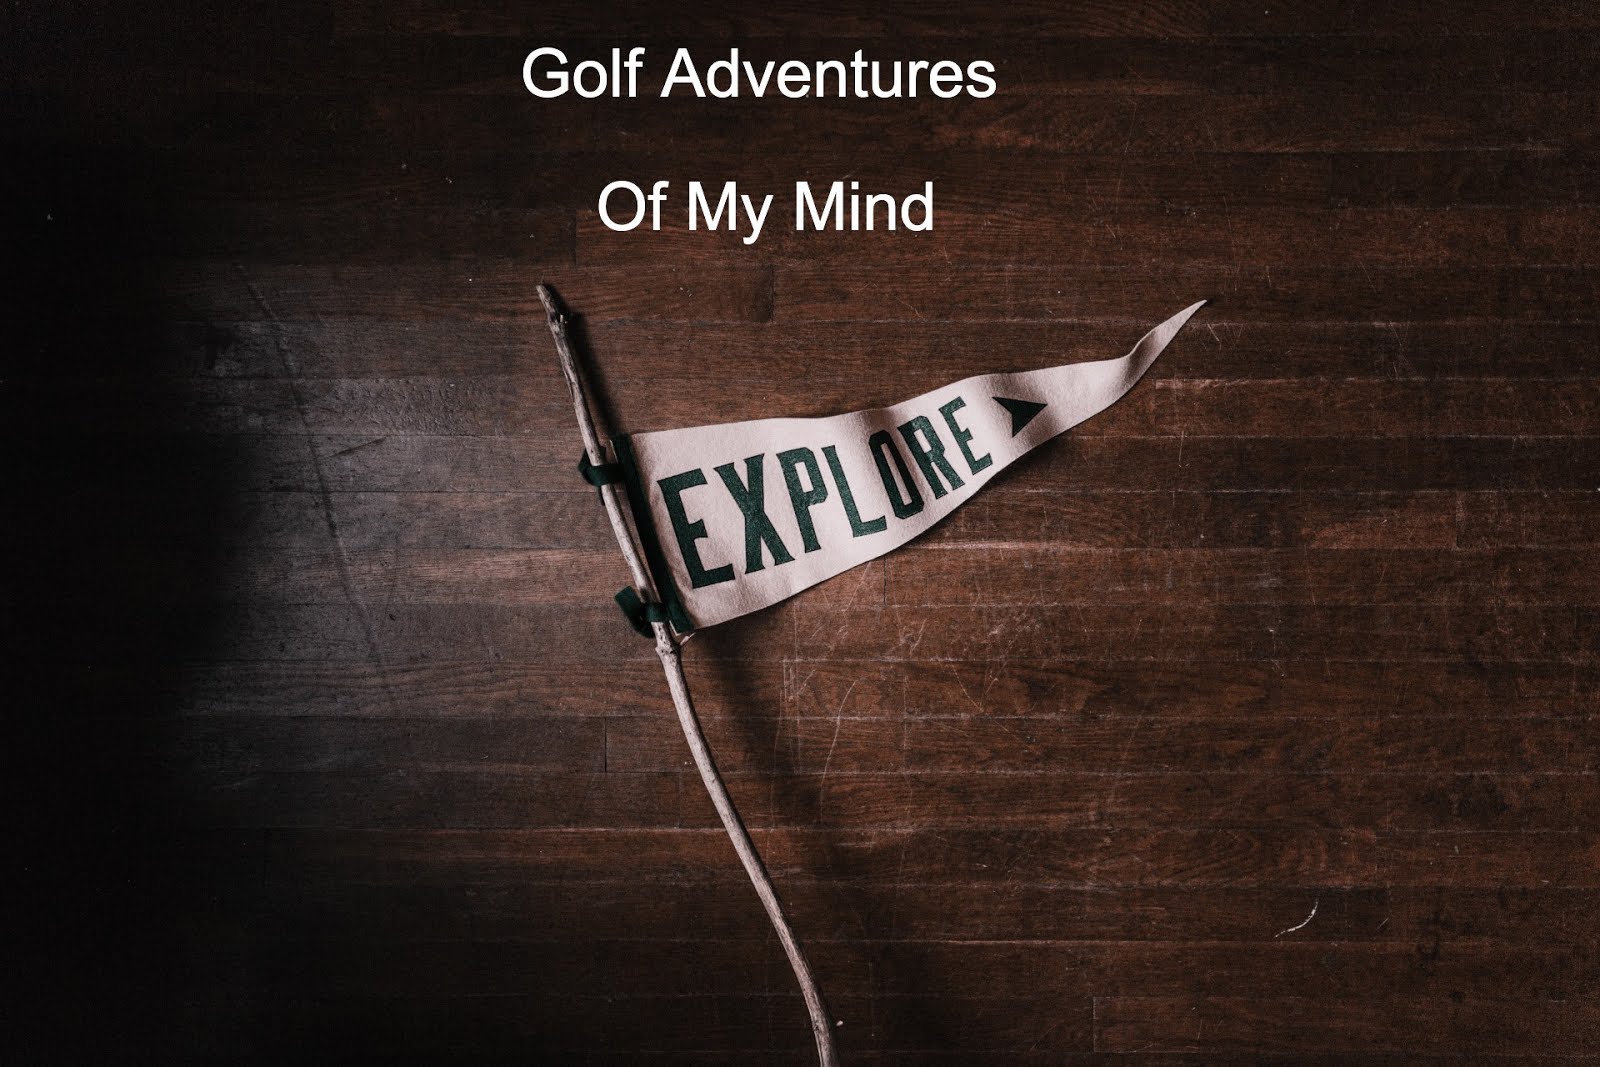 Dream Golf Adventures